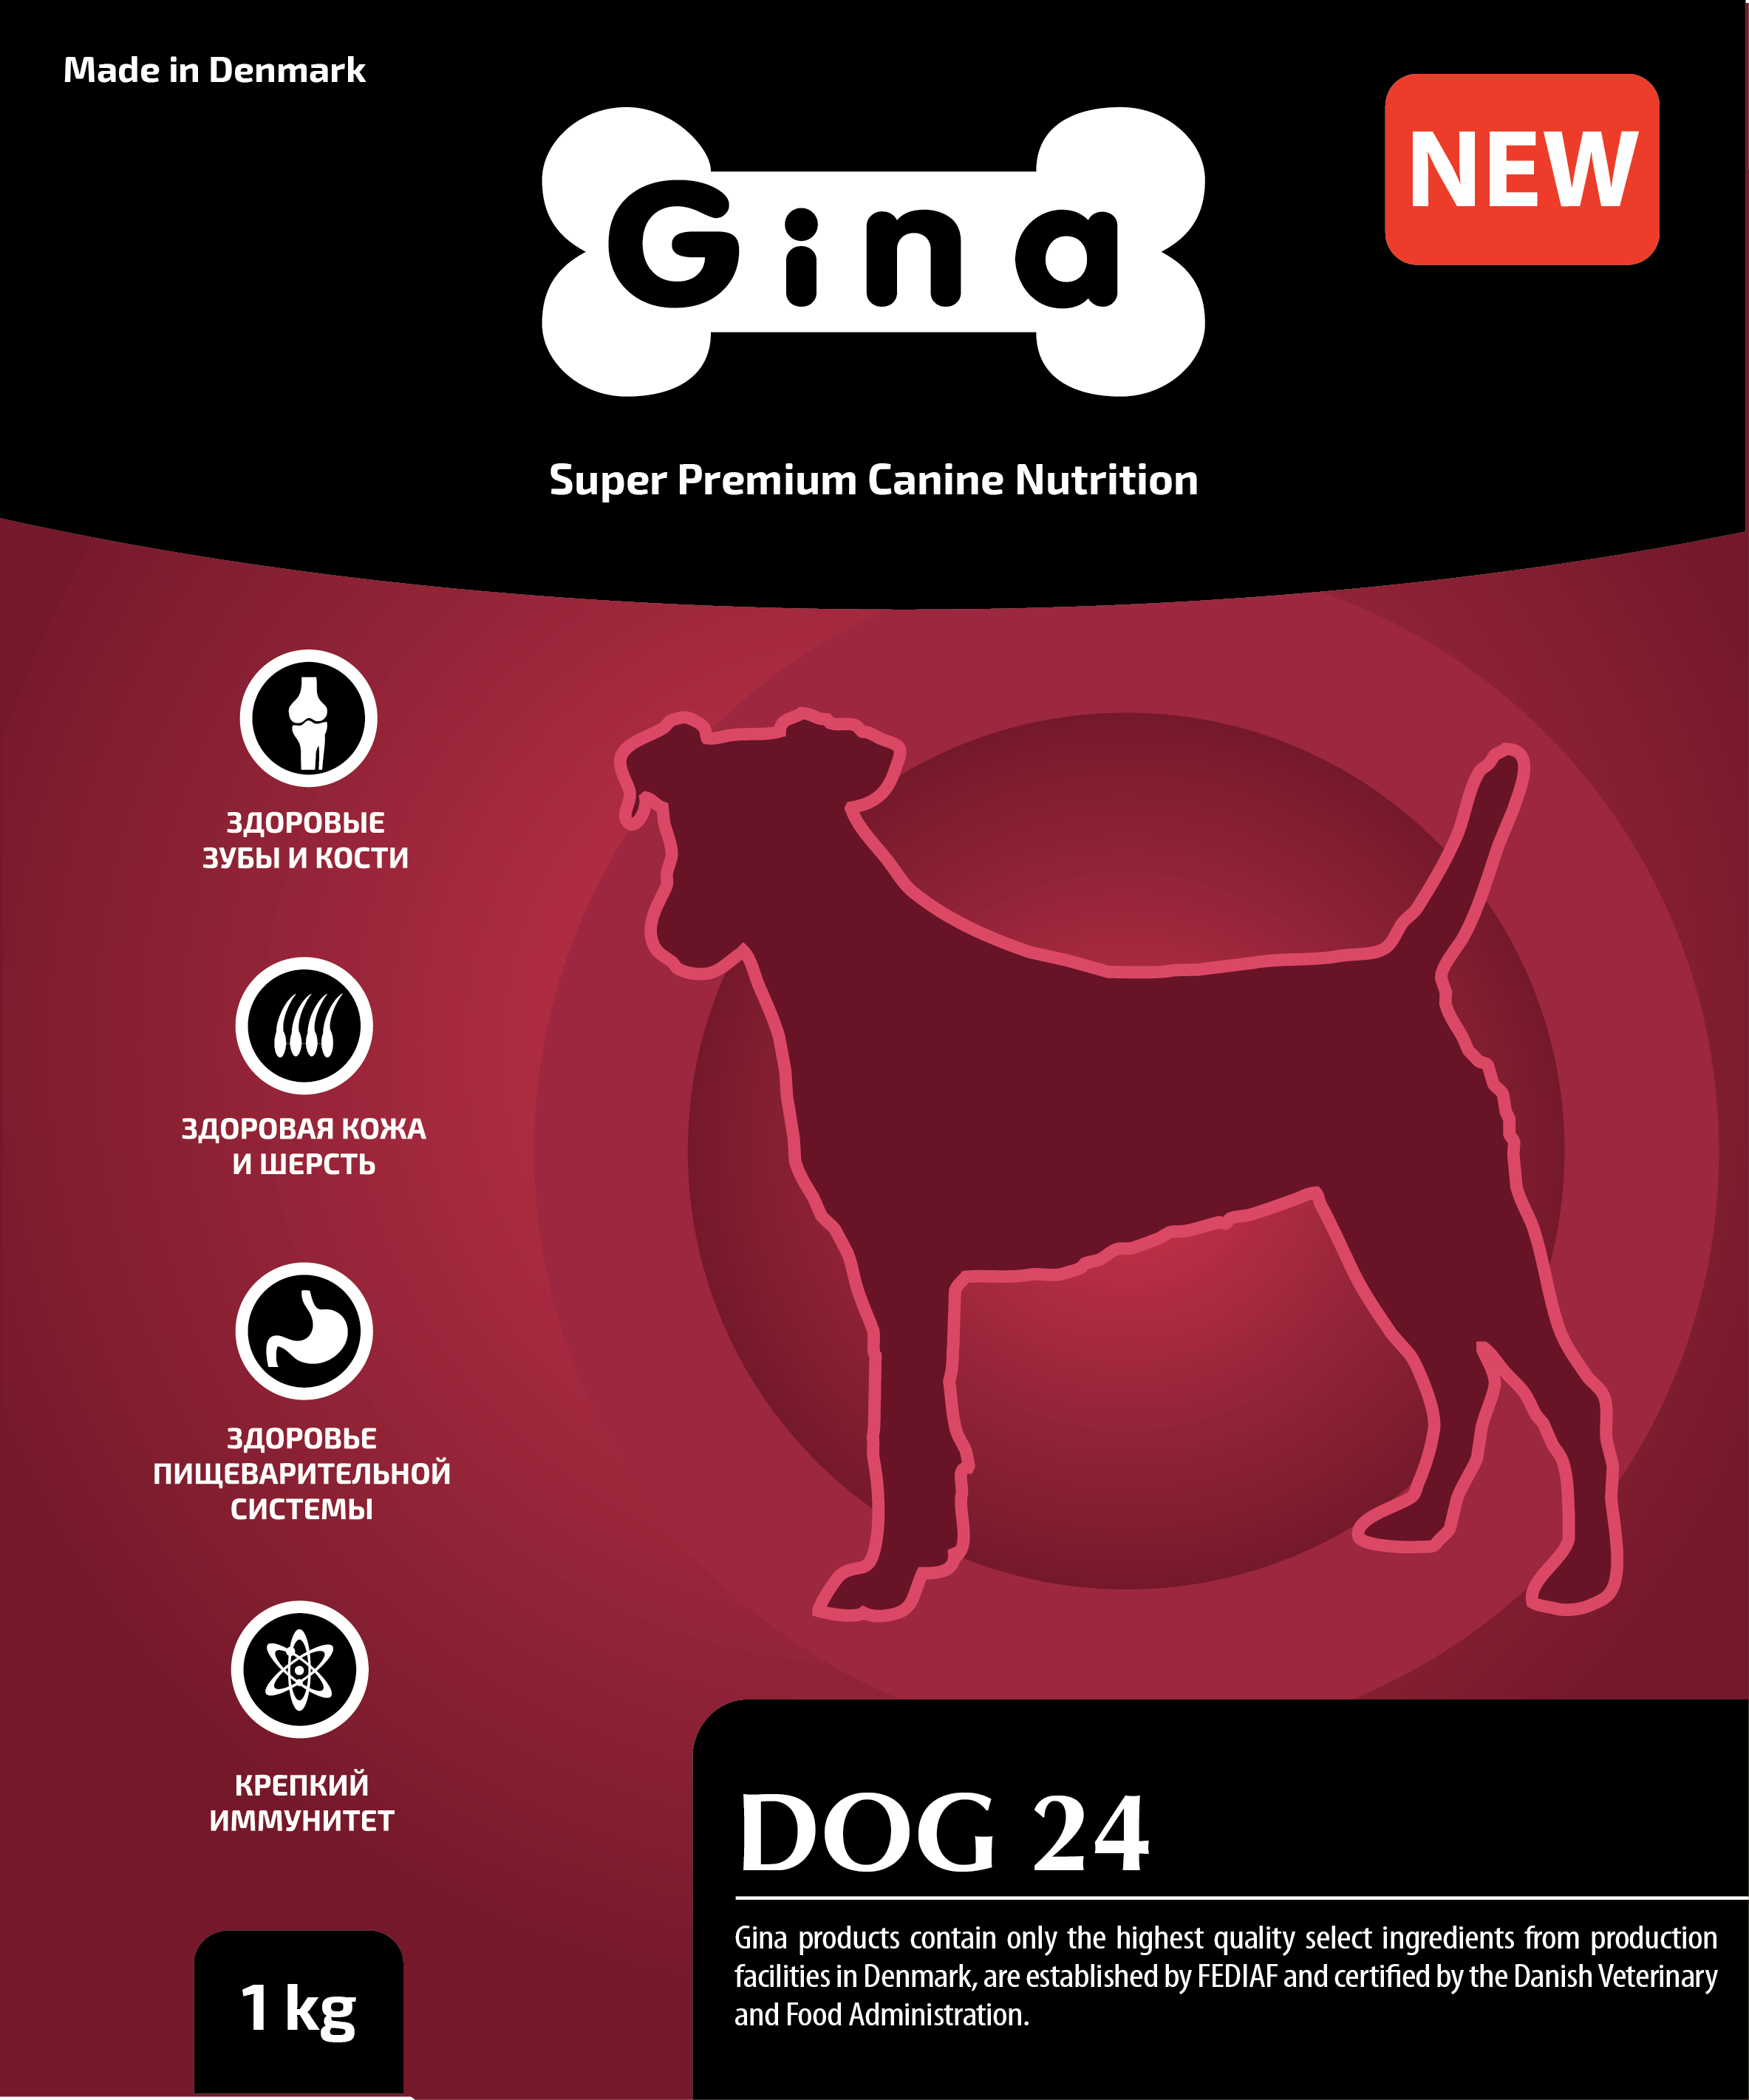 Корм для собак кожа и шерсть. Корм для собак Gina Dog 24. Корм Джина для собак гипоаллергенный. Состав корма для собак Gina. Корм Dog Denmark.